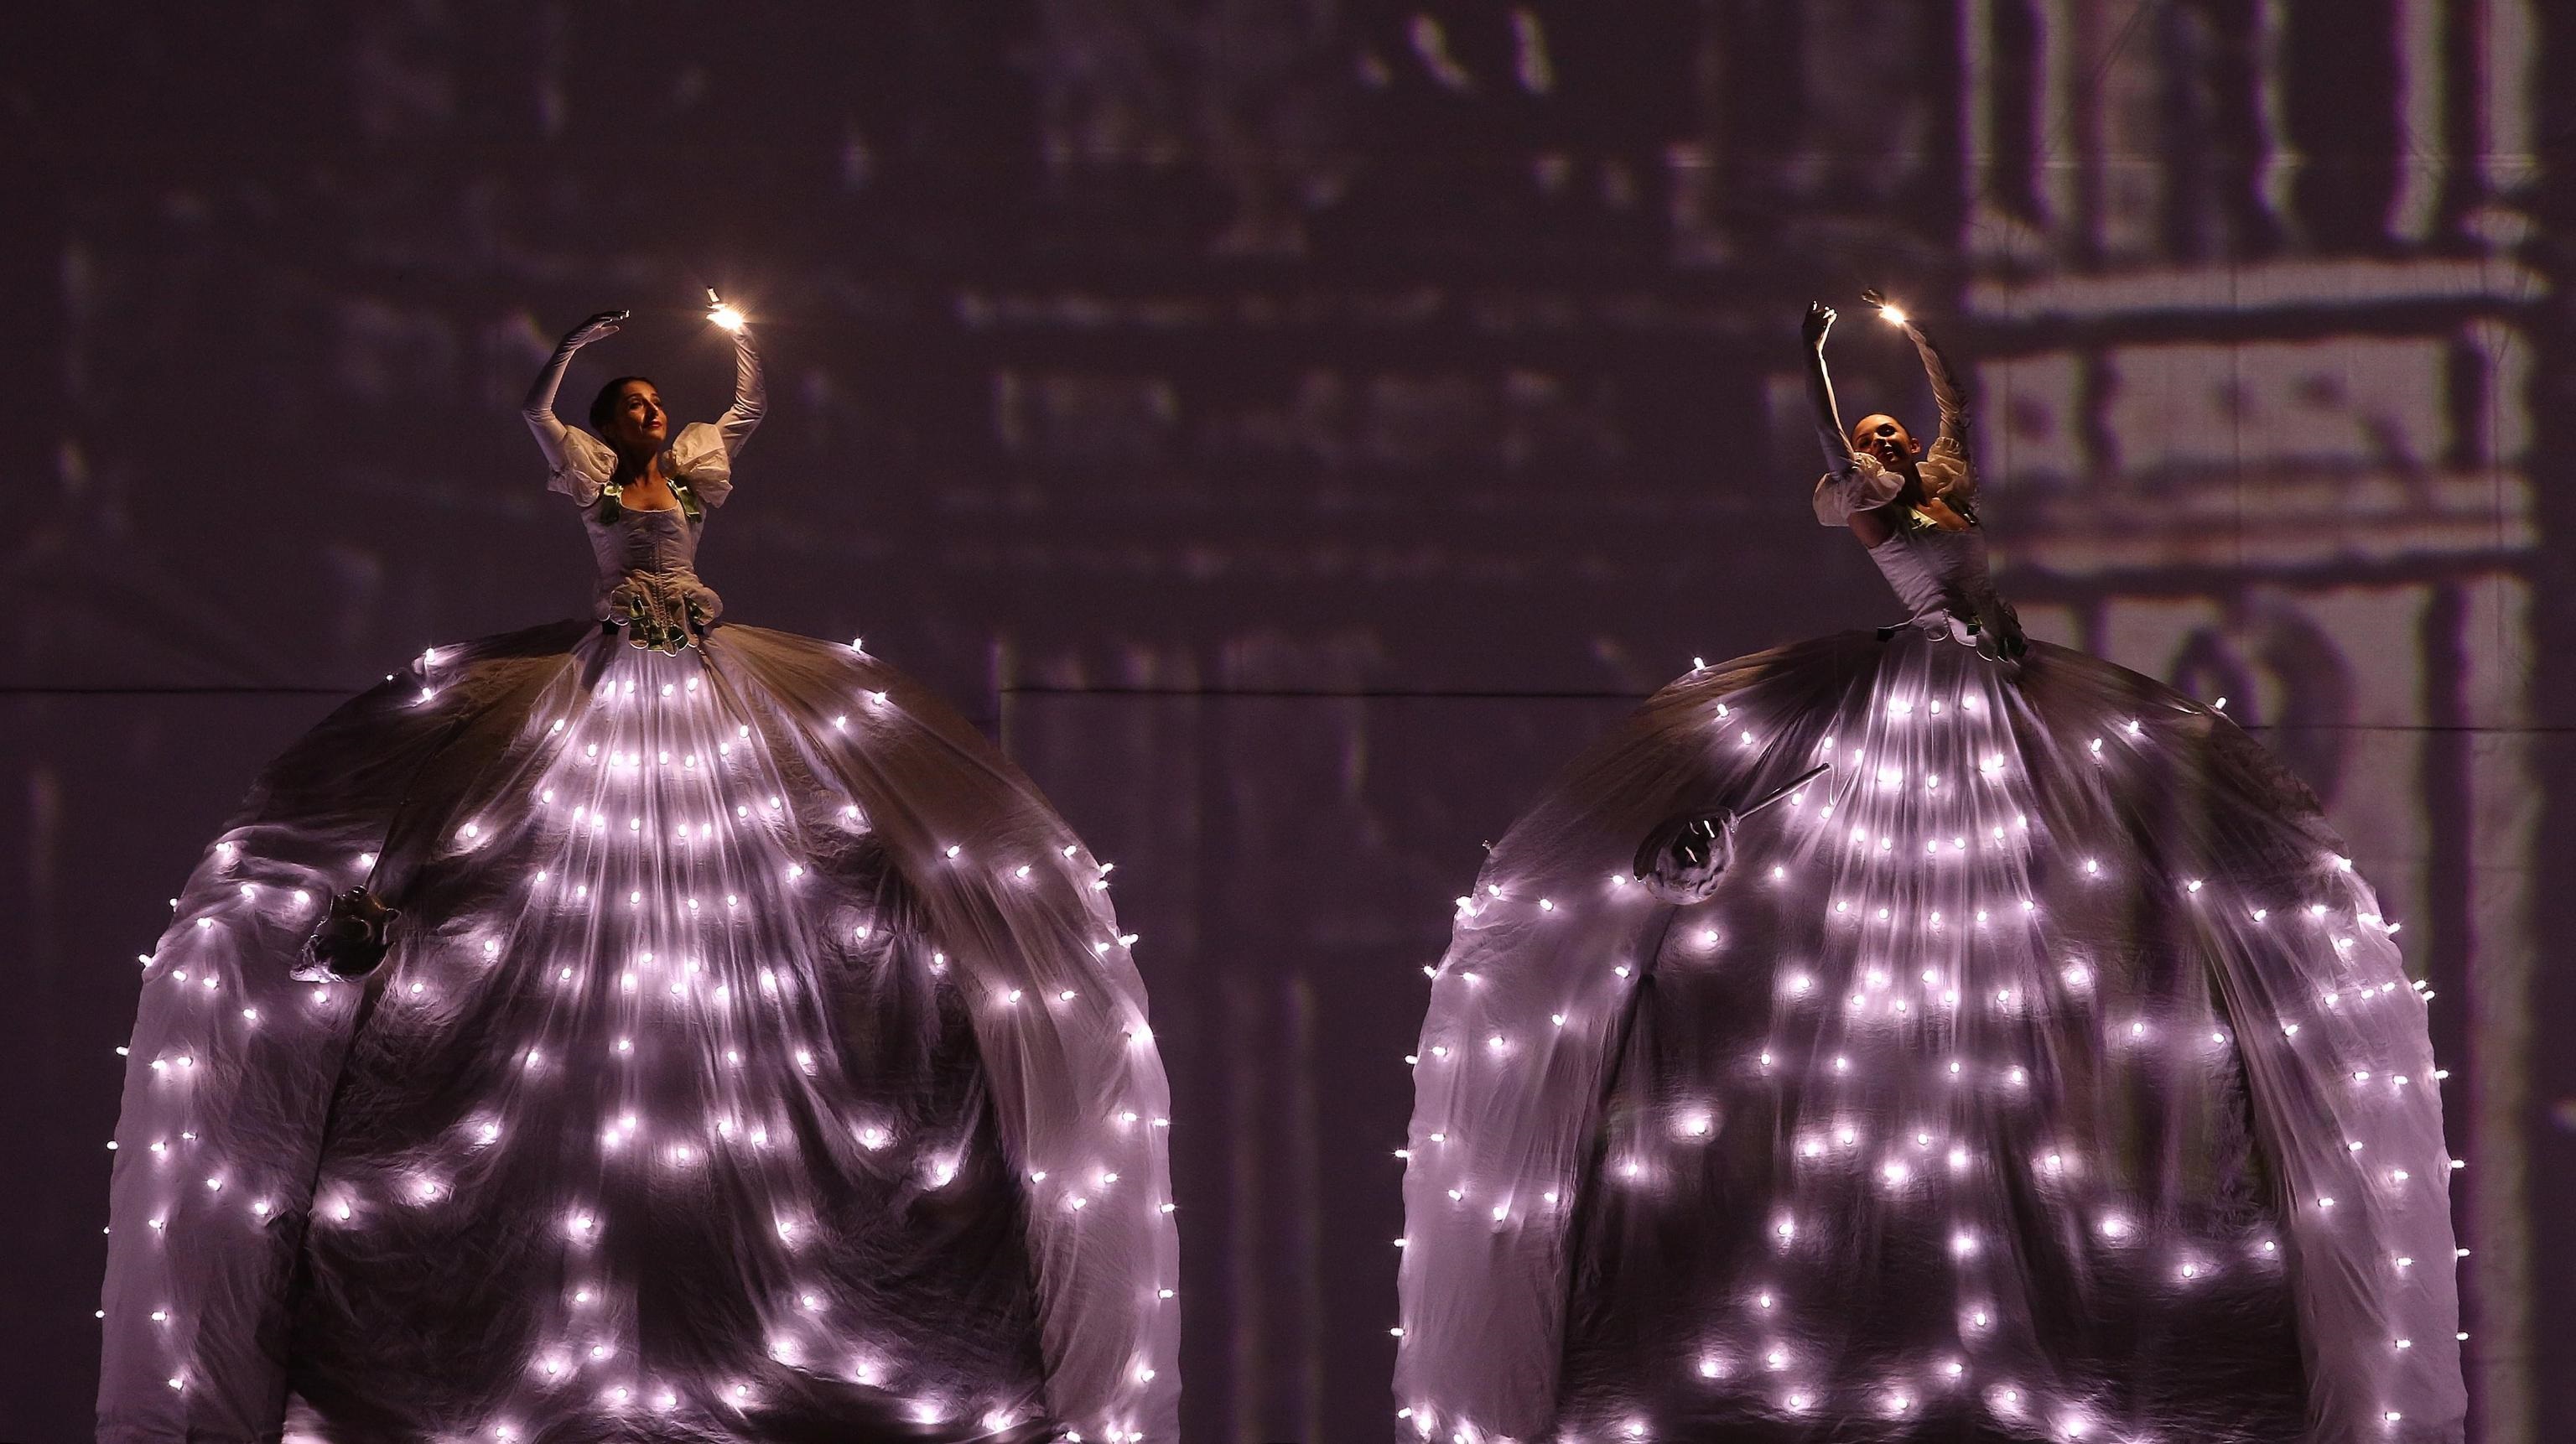 In scena le luci, altra caratteristica predominante della performance degli artisti della compagnia italiana in piazza a Bogotà